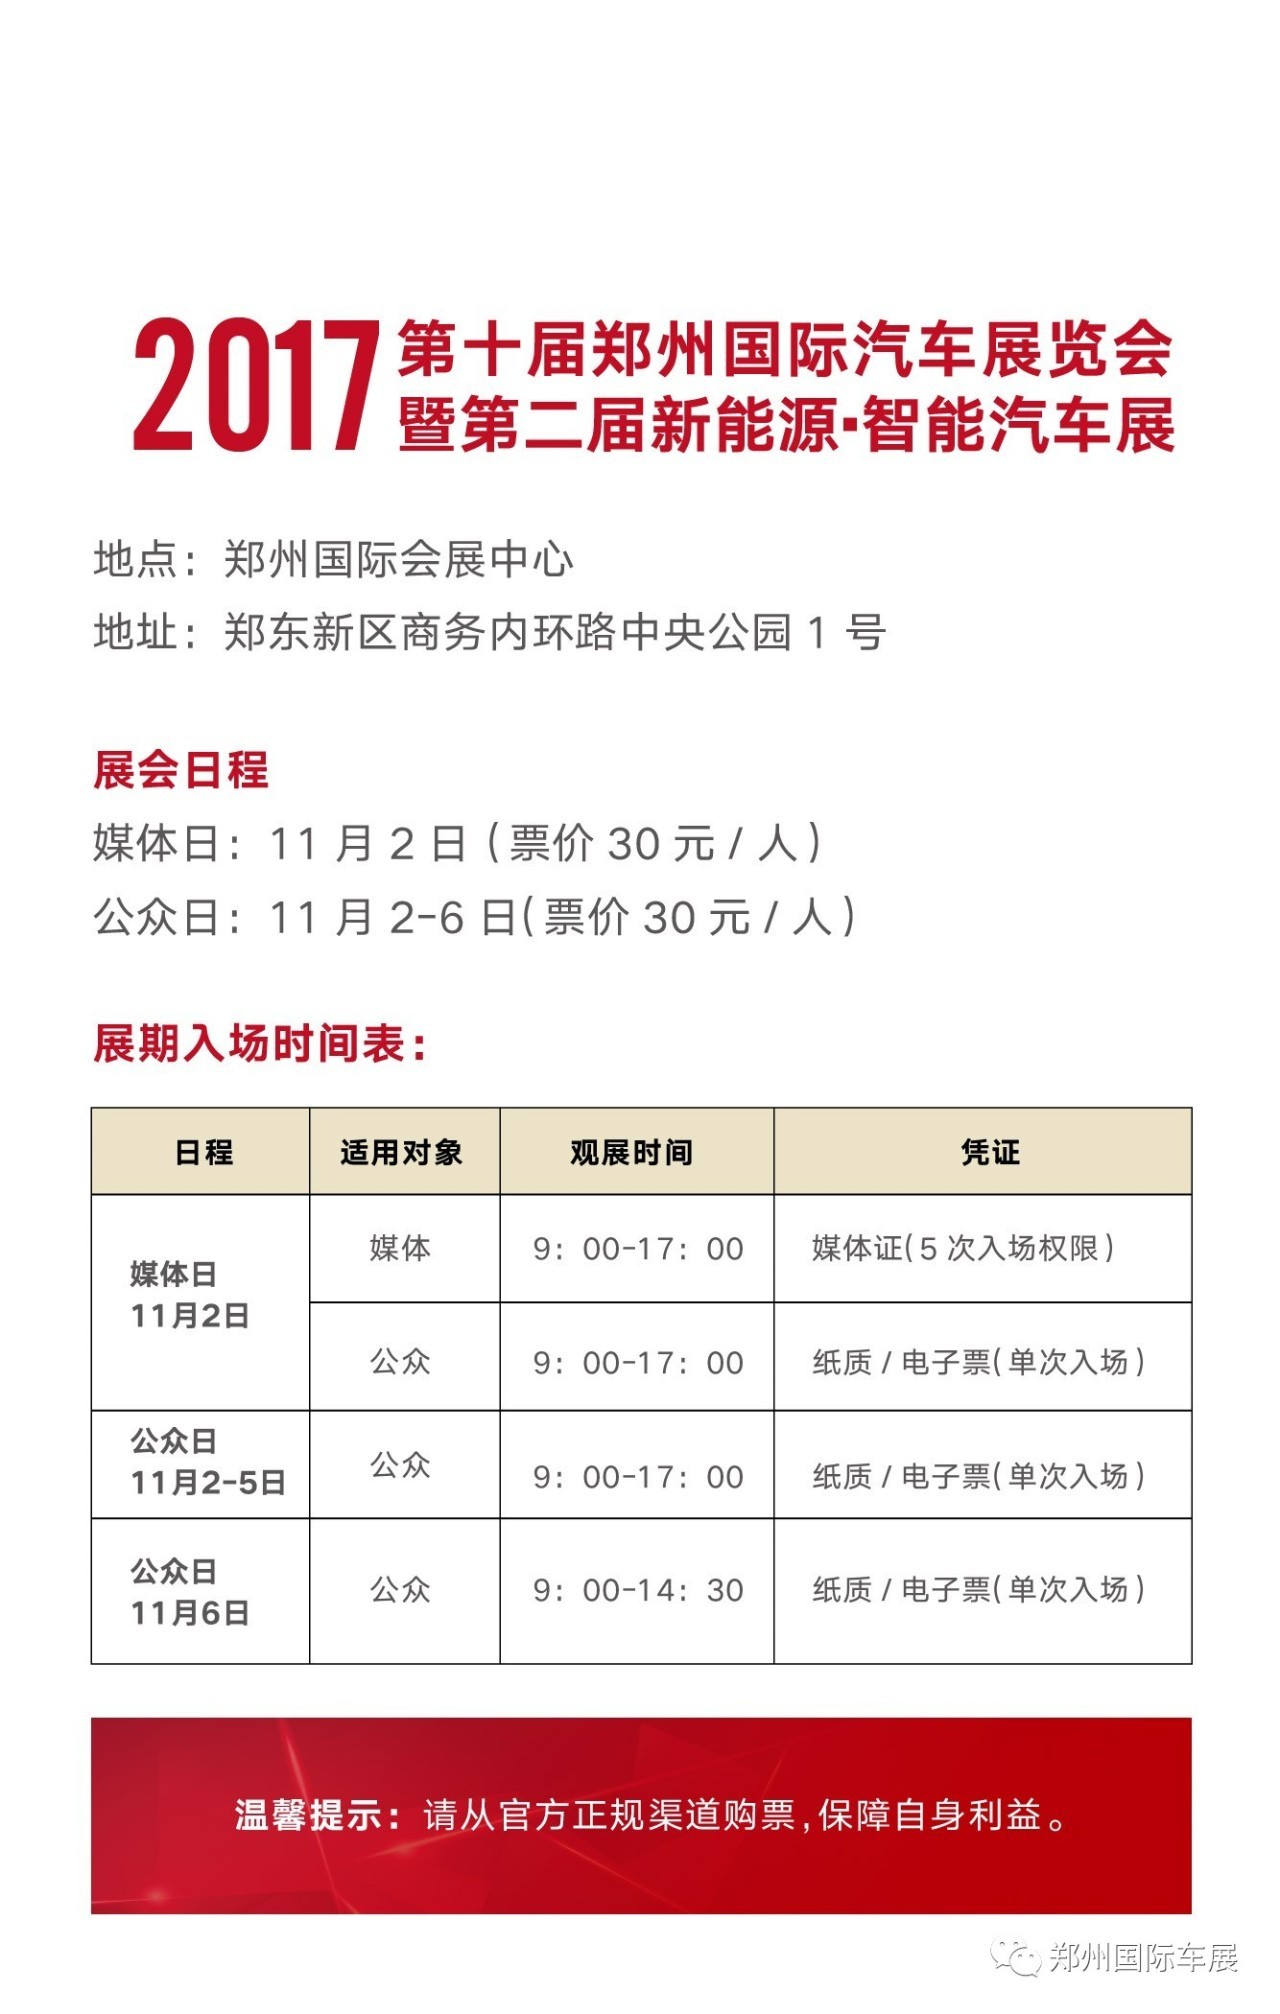 2017郑州国际车展11月2日开幕,抢票通道明日关闭!